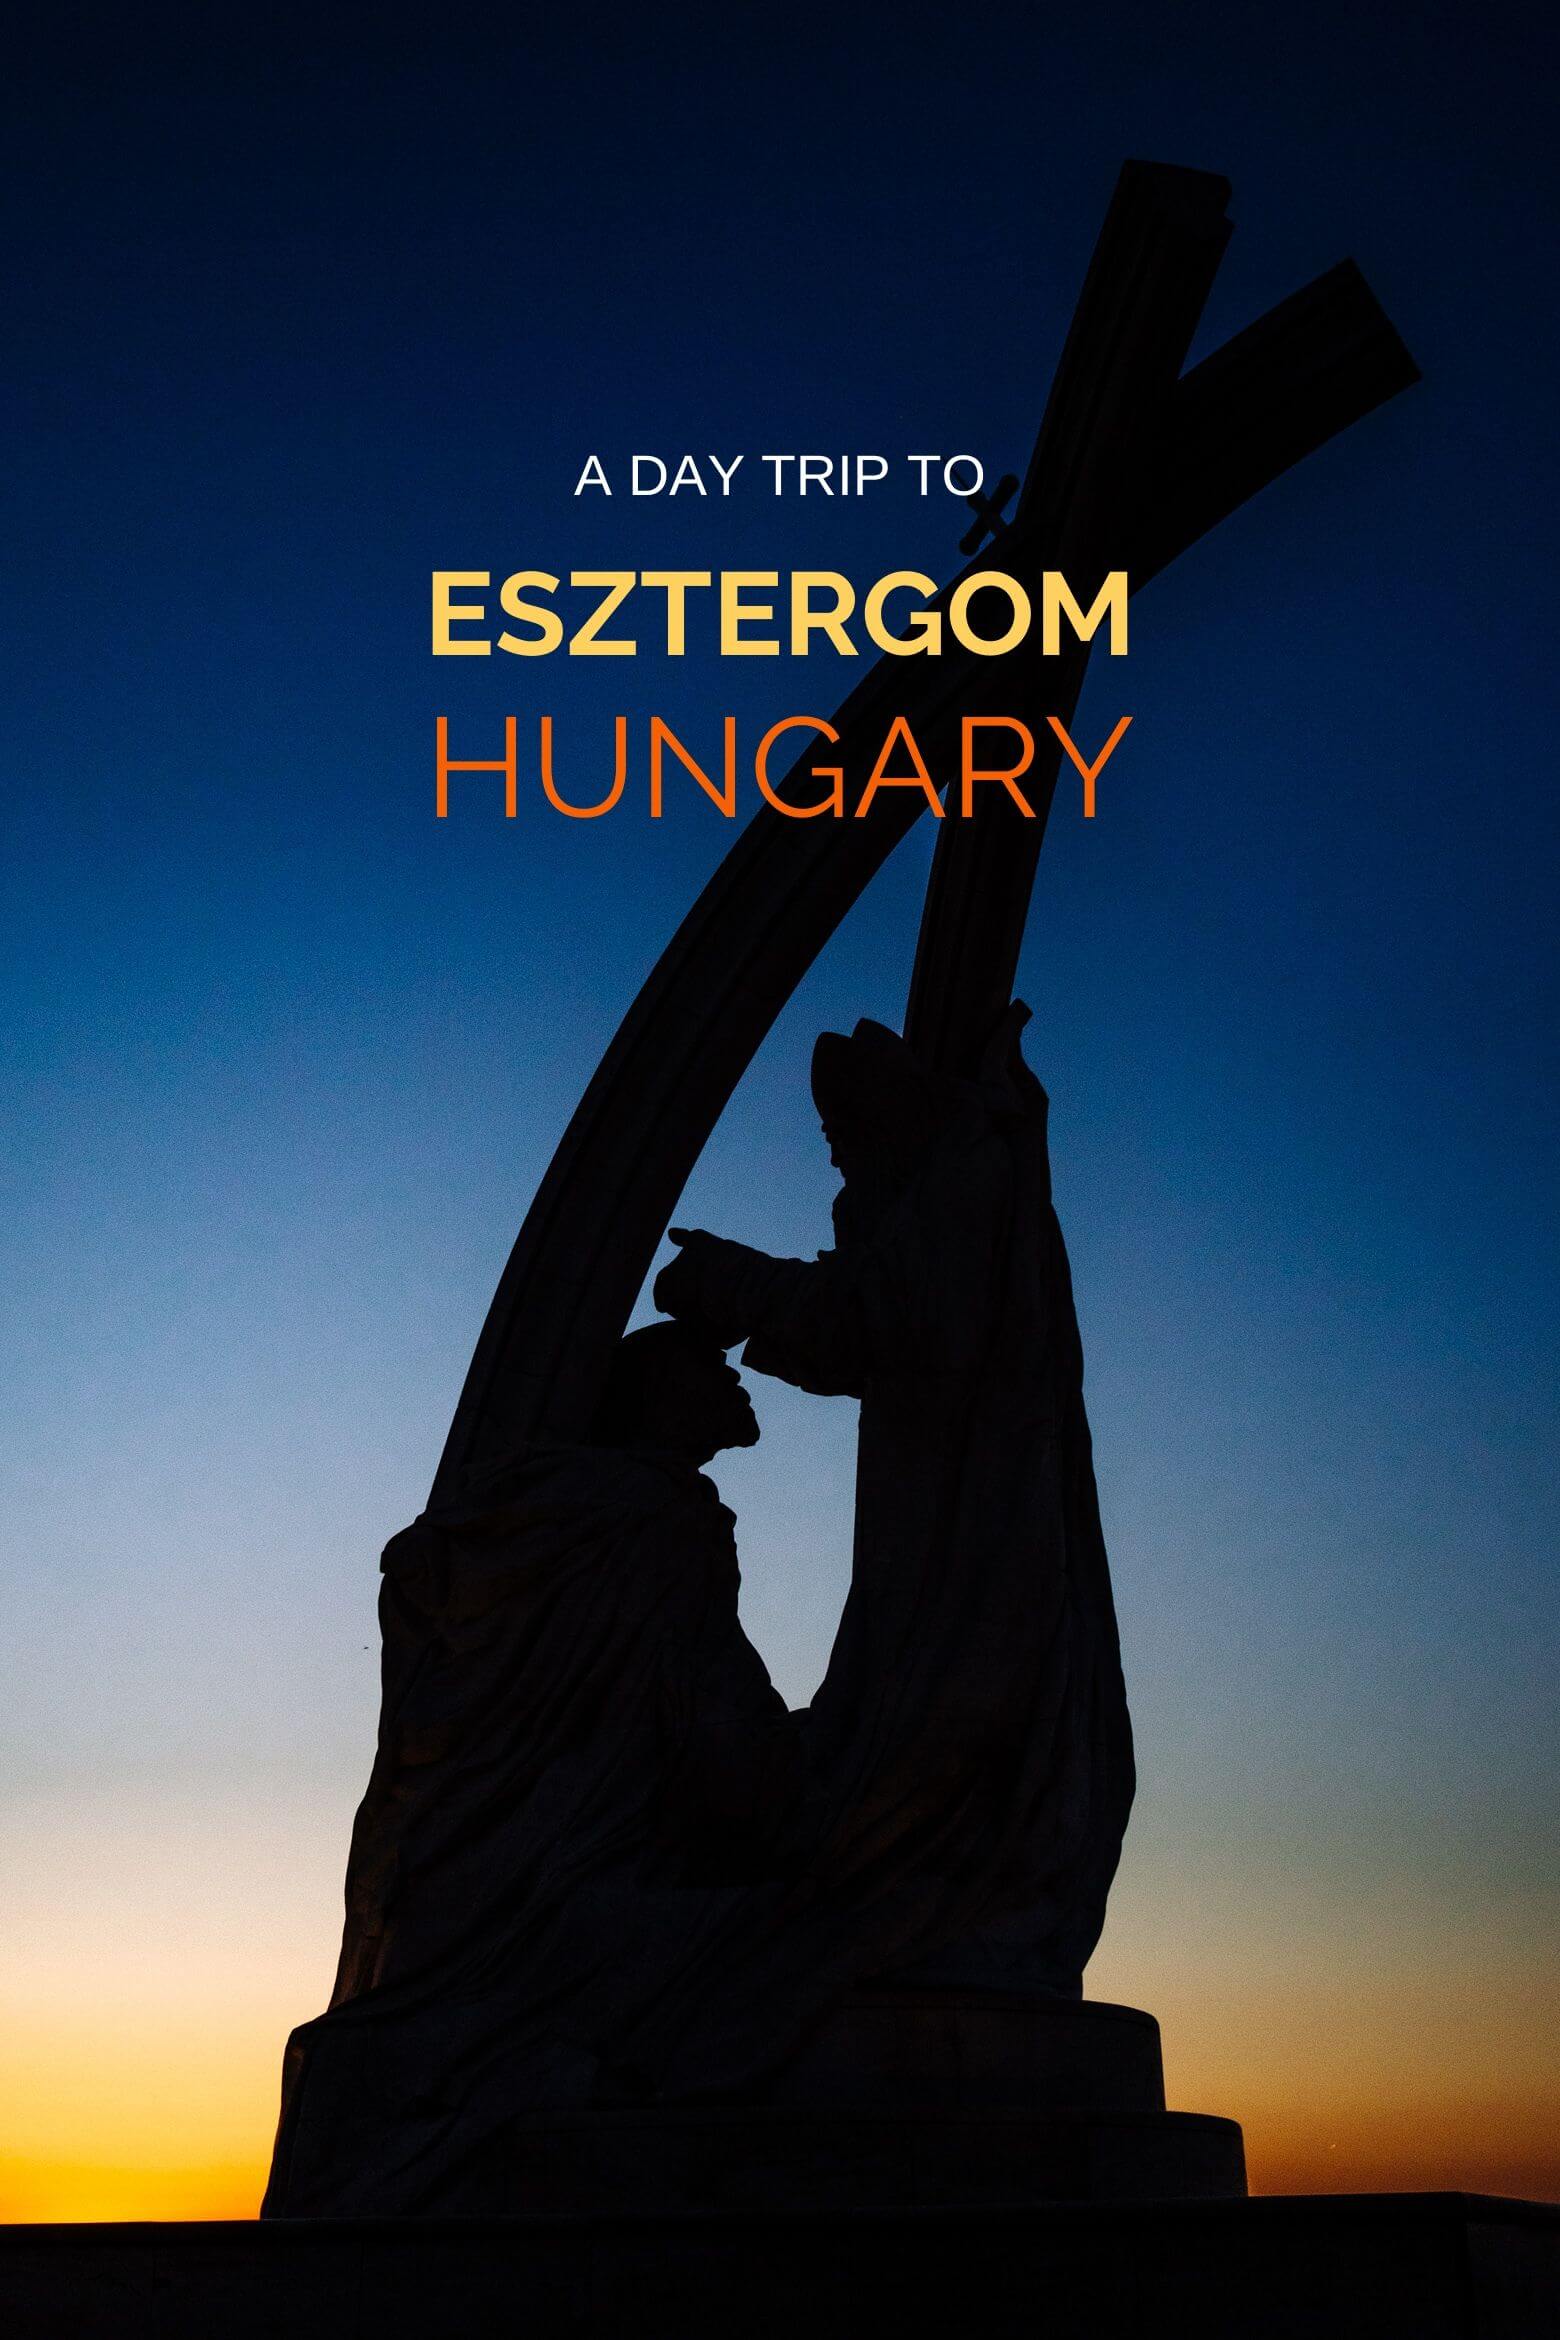 Esztergom Hungary Day Trip